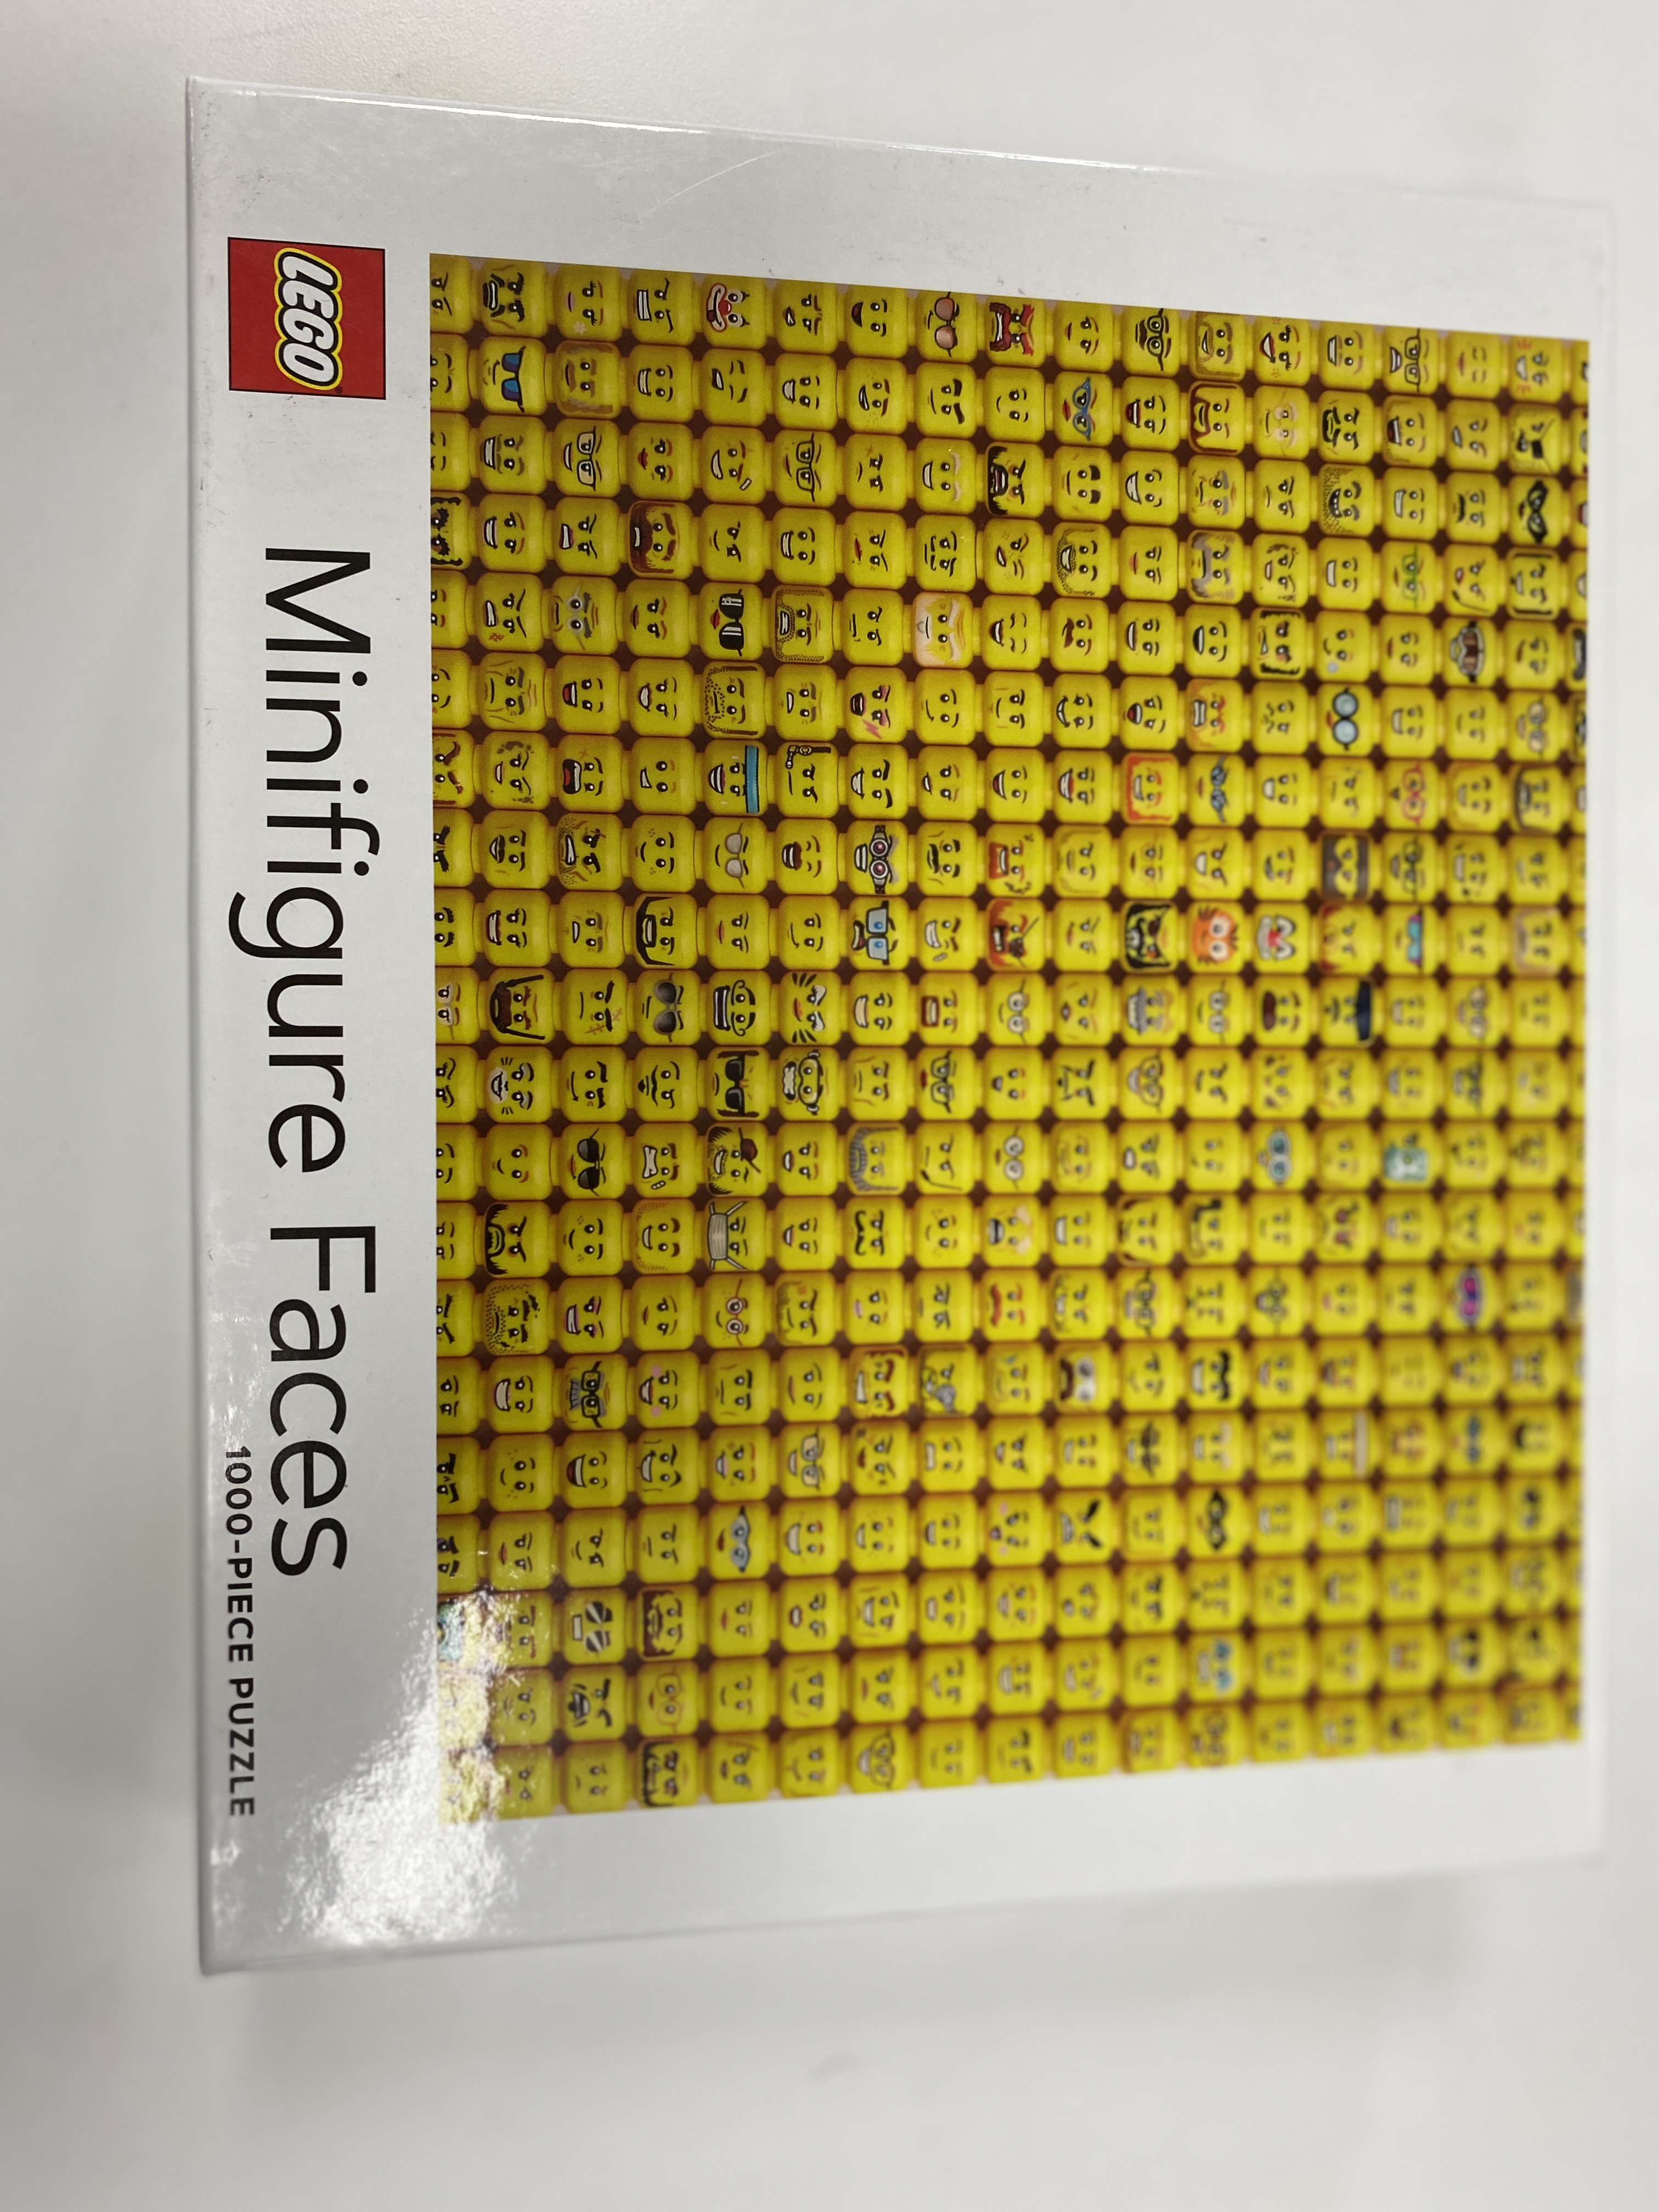 LEGO | 乐高拼图 / LEGO Minifigure Faces Puzzle商品图片,包邮包税